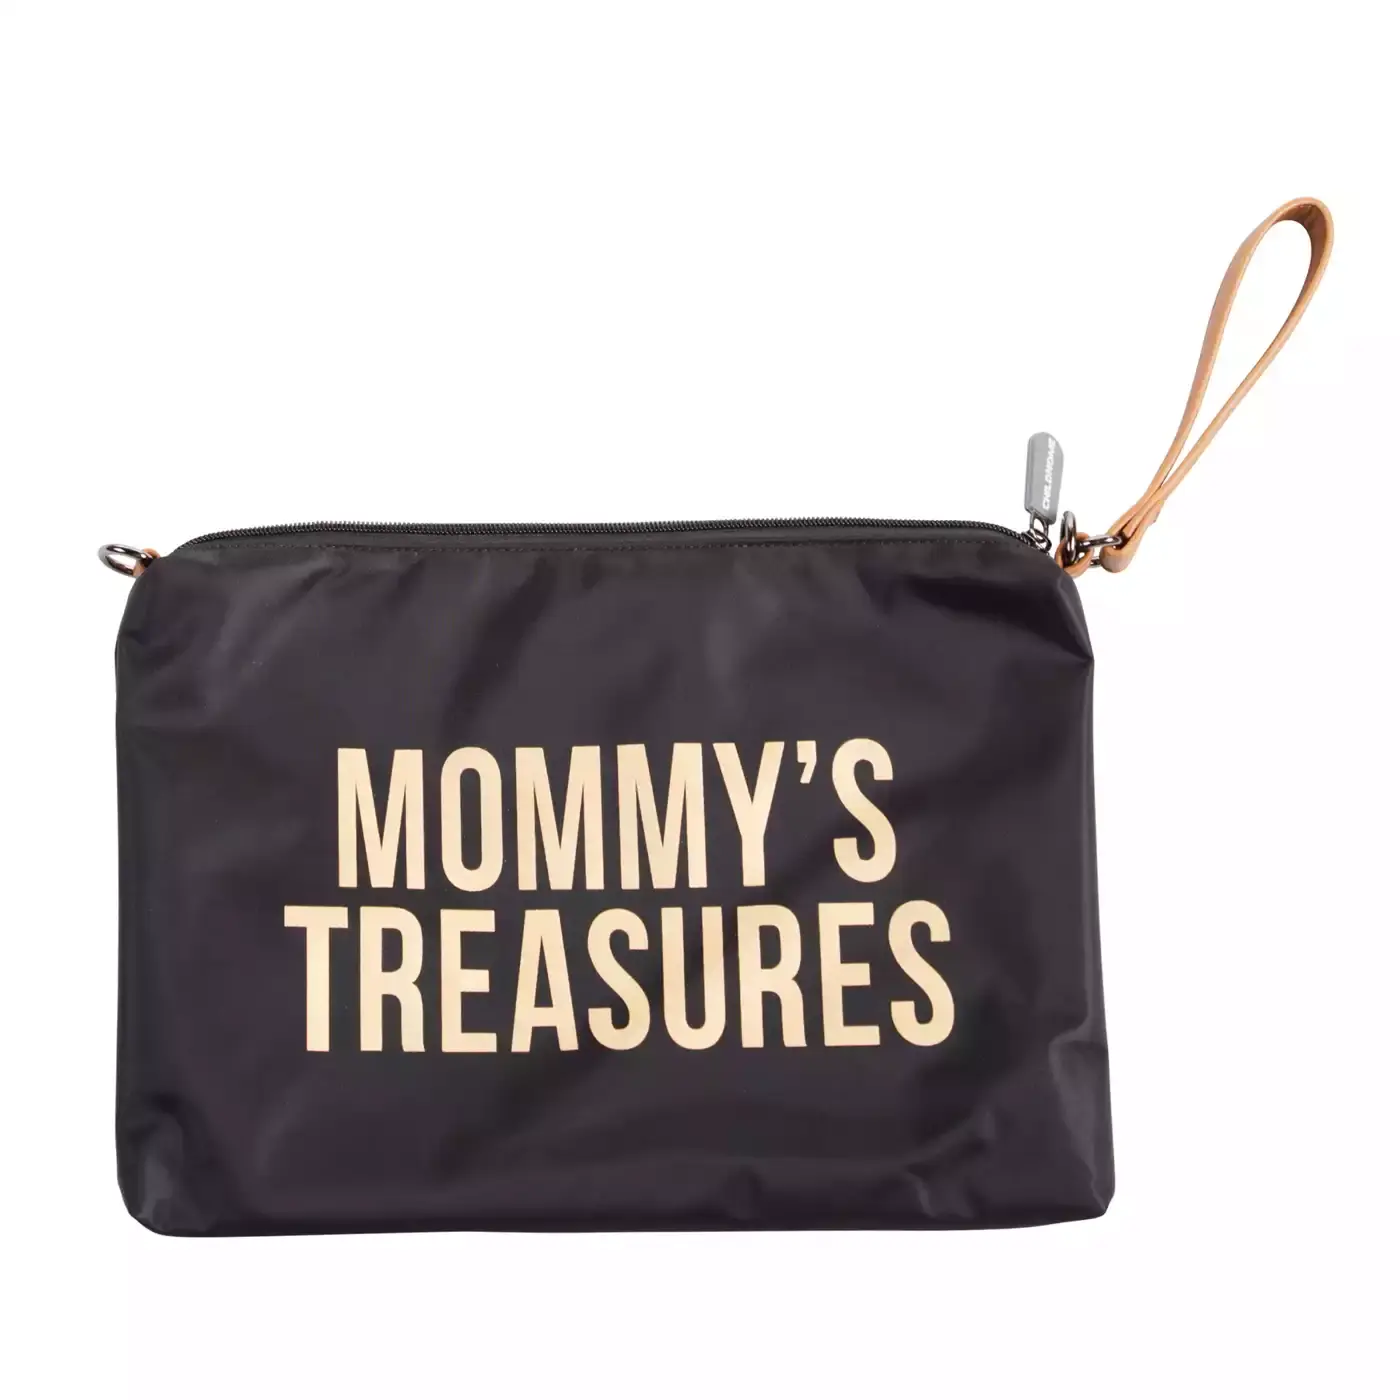 Mommy's Treasures Clutch CHILDHOME Schwarz Gelb Gold 2000580656169 3